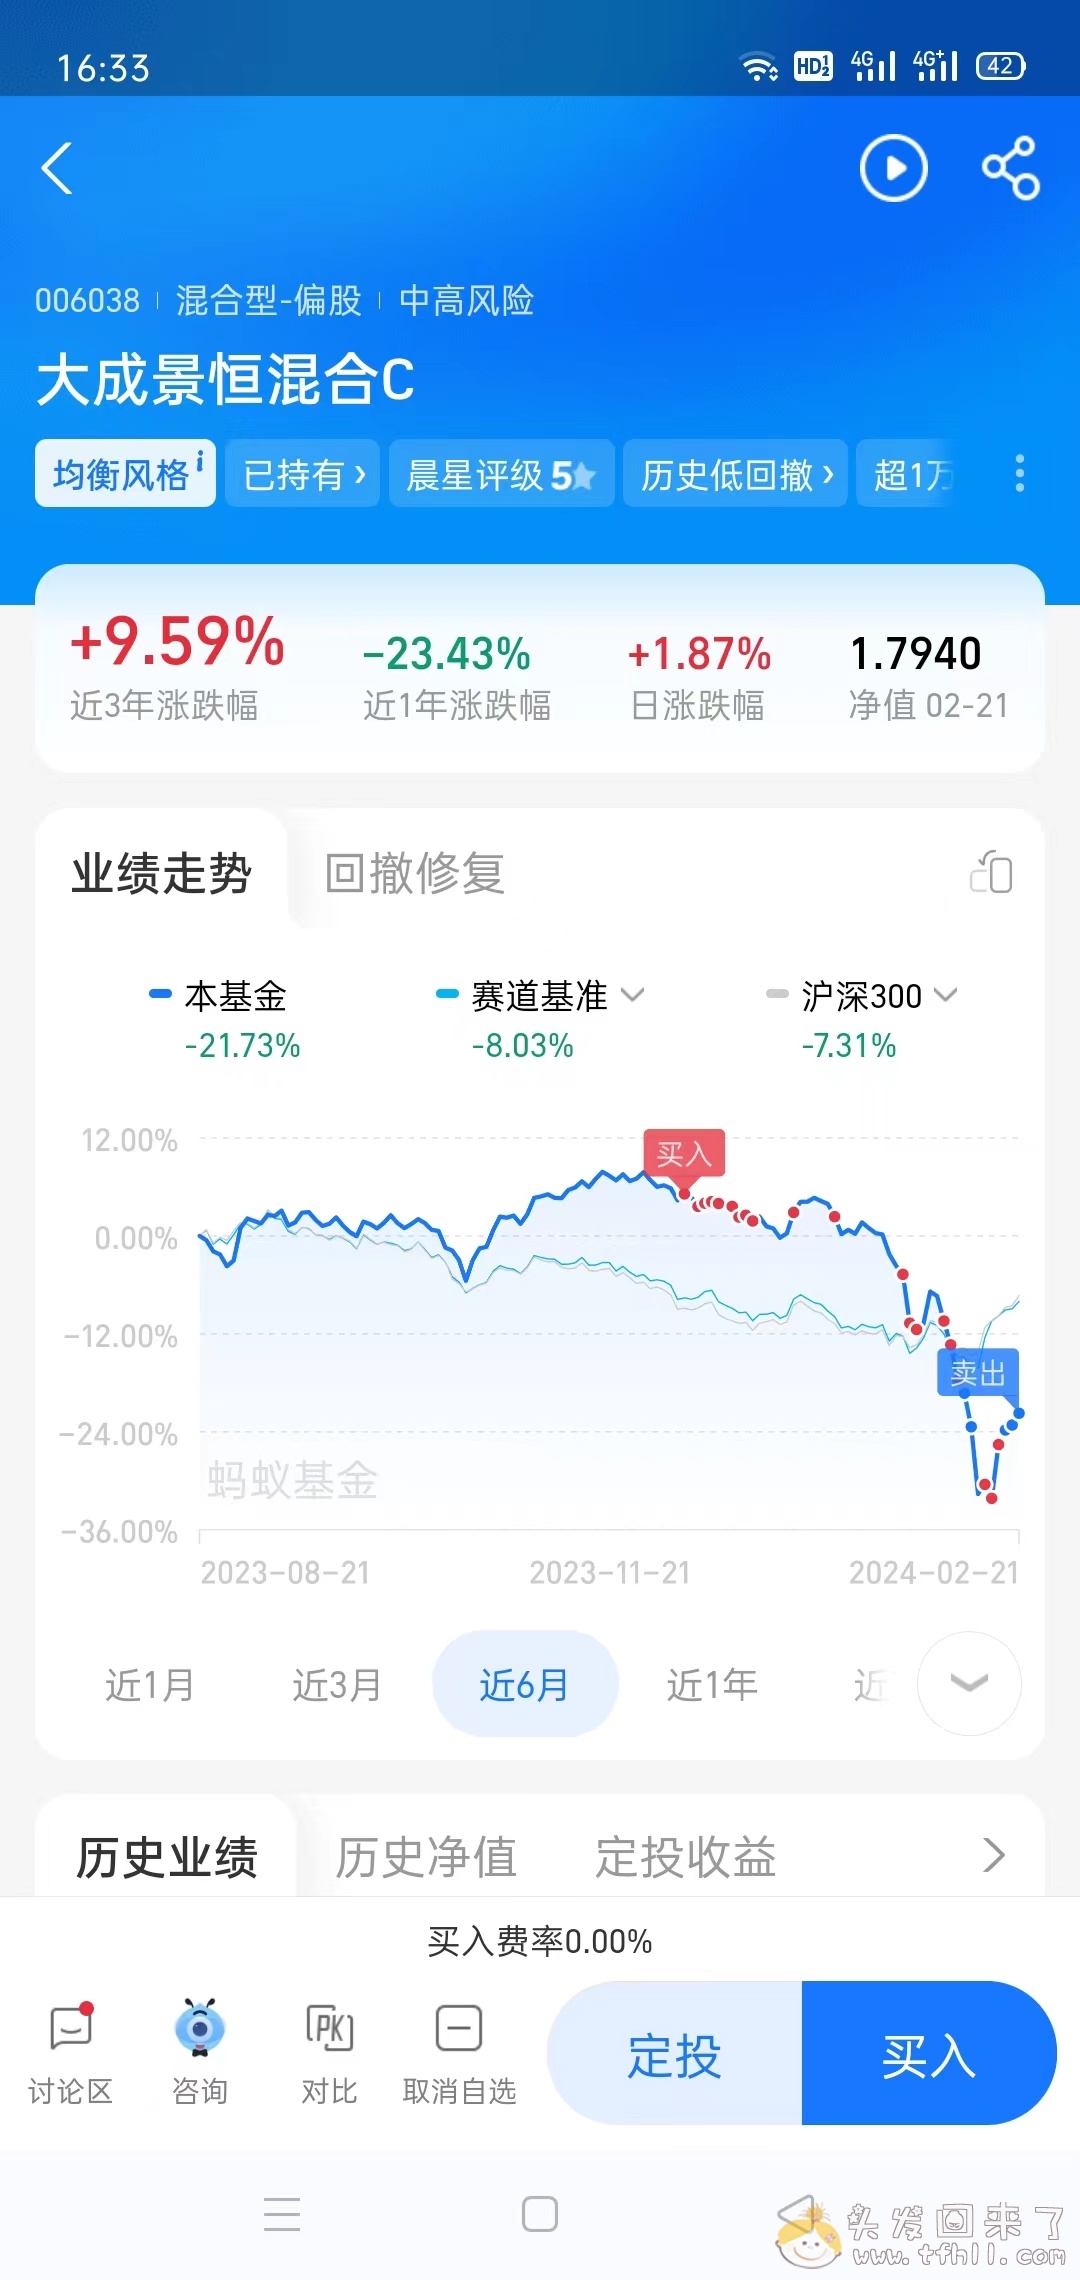 上证指数7连阳，我的股票账户2月份收益今天终于翻红了图片 No.14